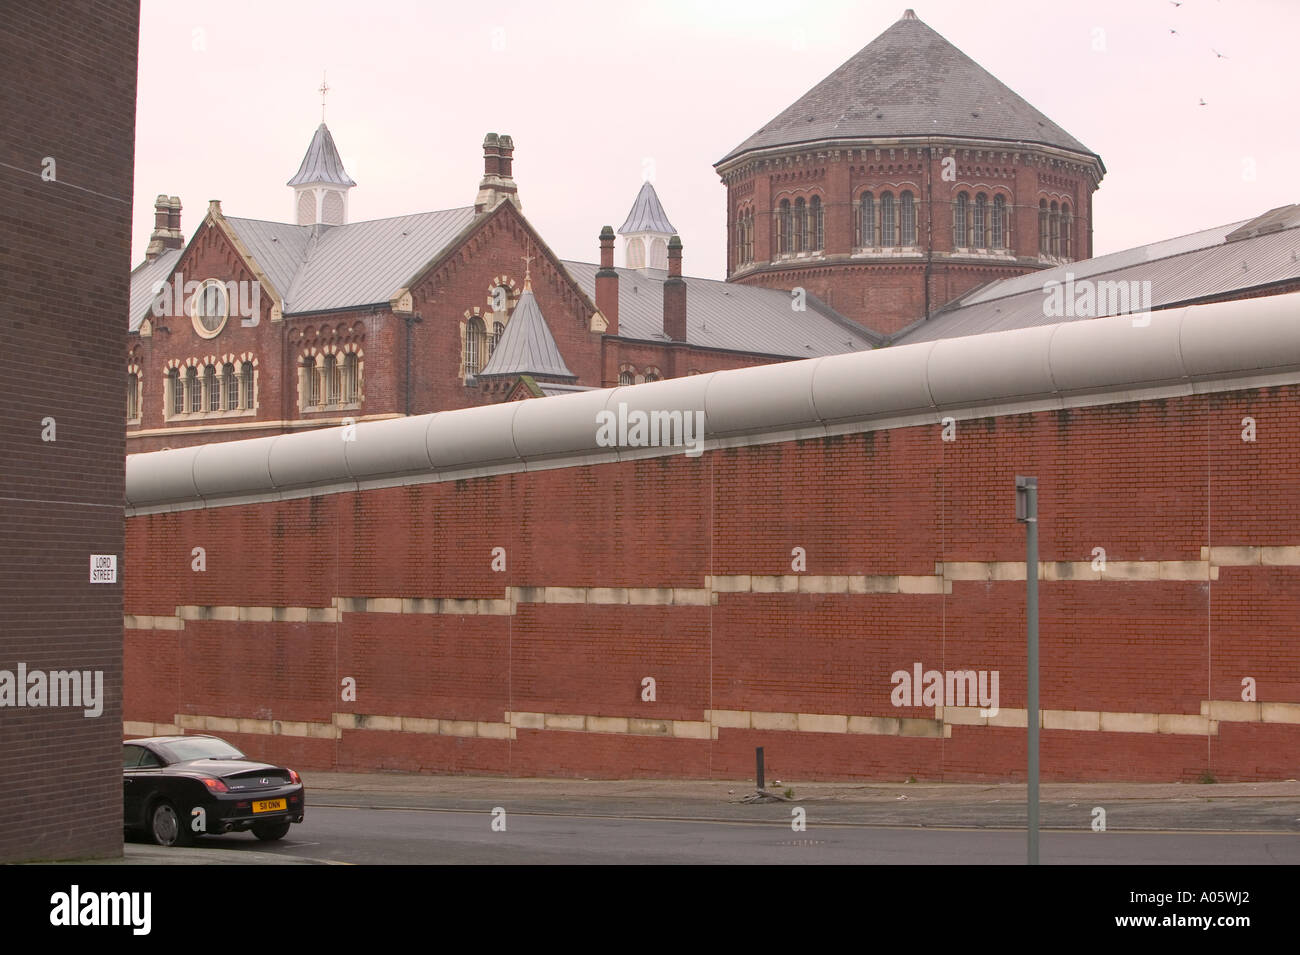 Strangeways prison in Manchester Stock Photo